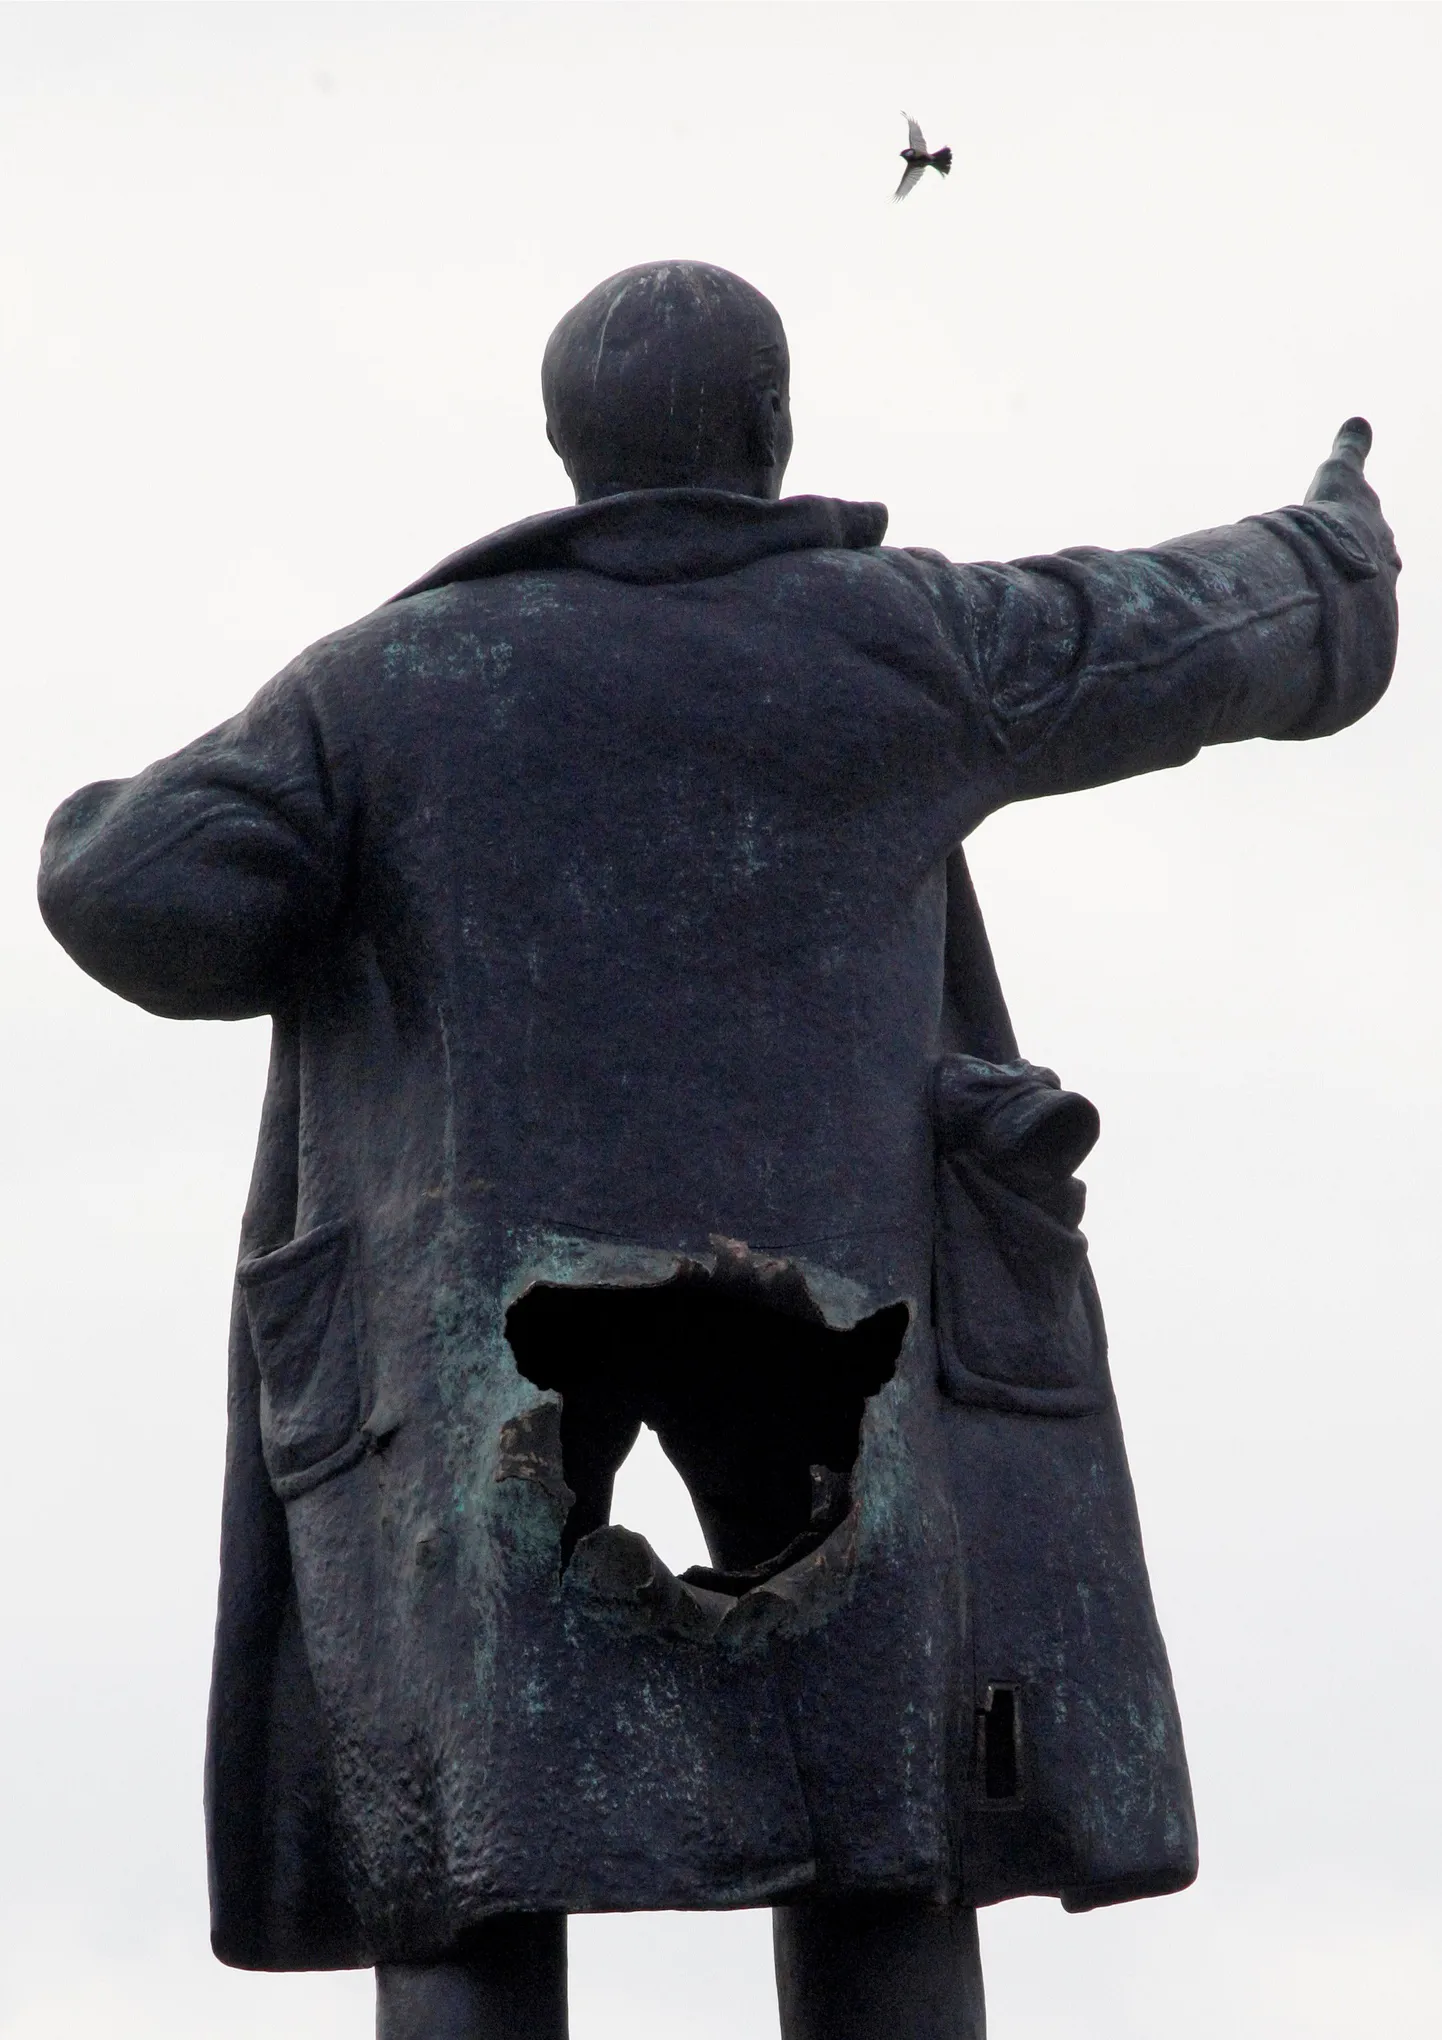 Möödunud nädalal püüti õhku lasta Peterburis seisvat Lenini kuju.